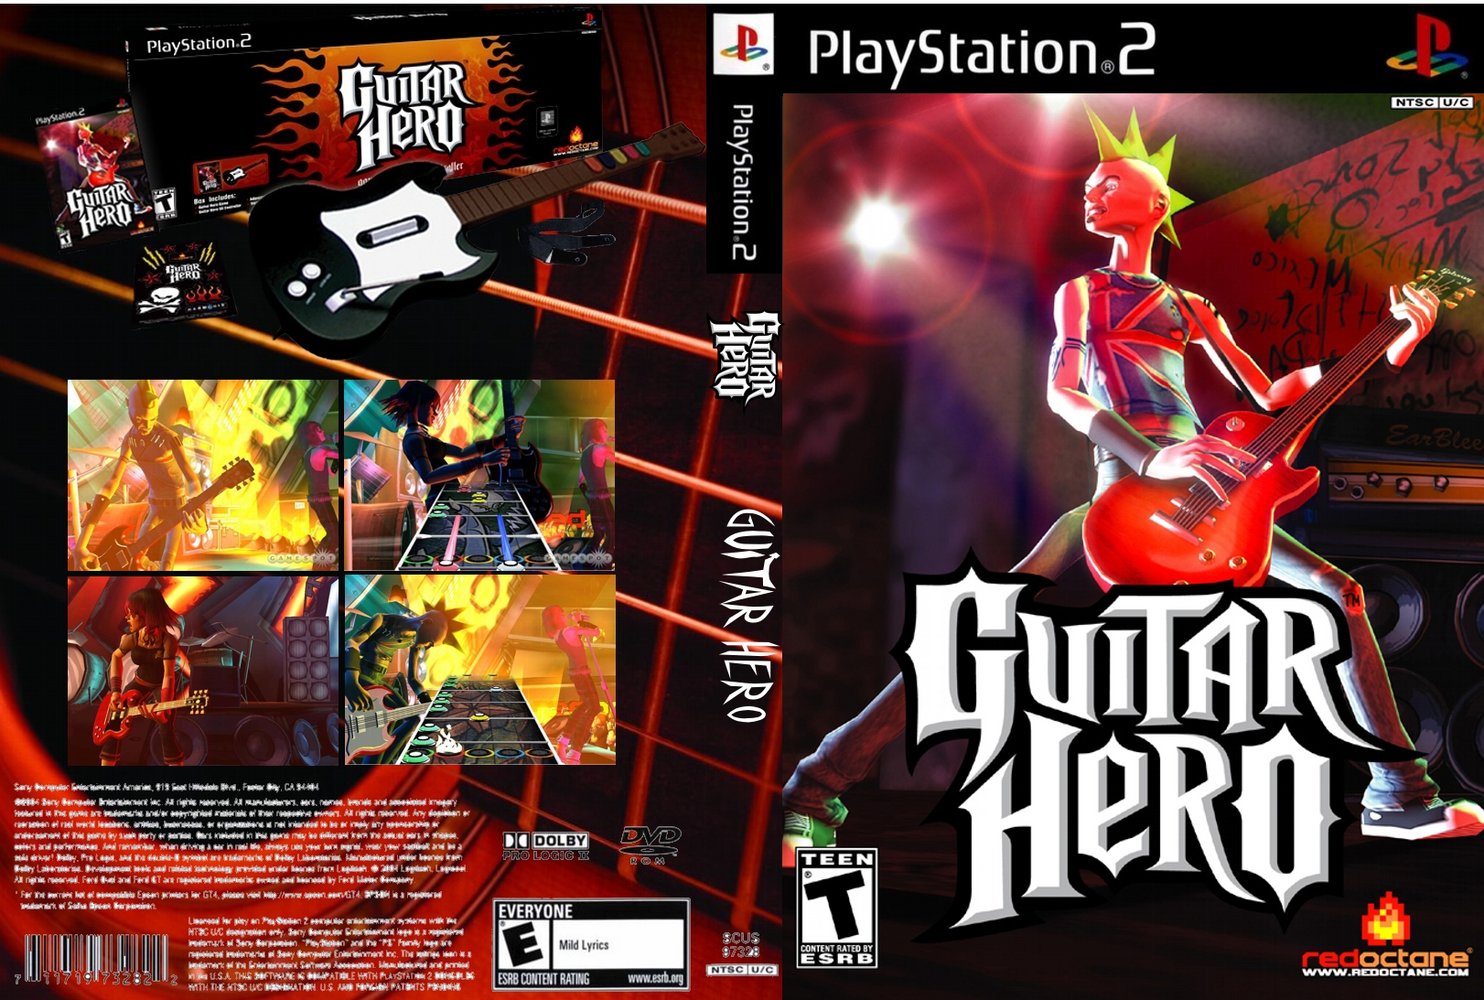 Guitar Hero 3 Ps2